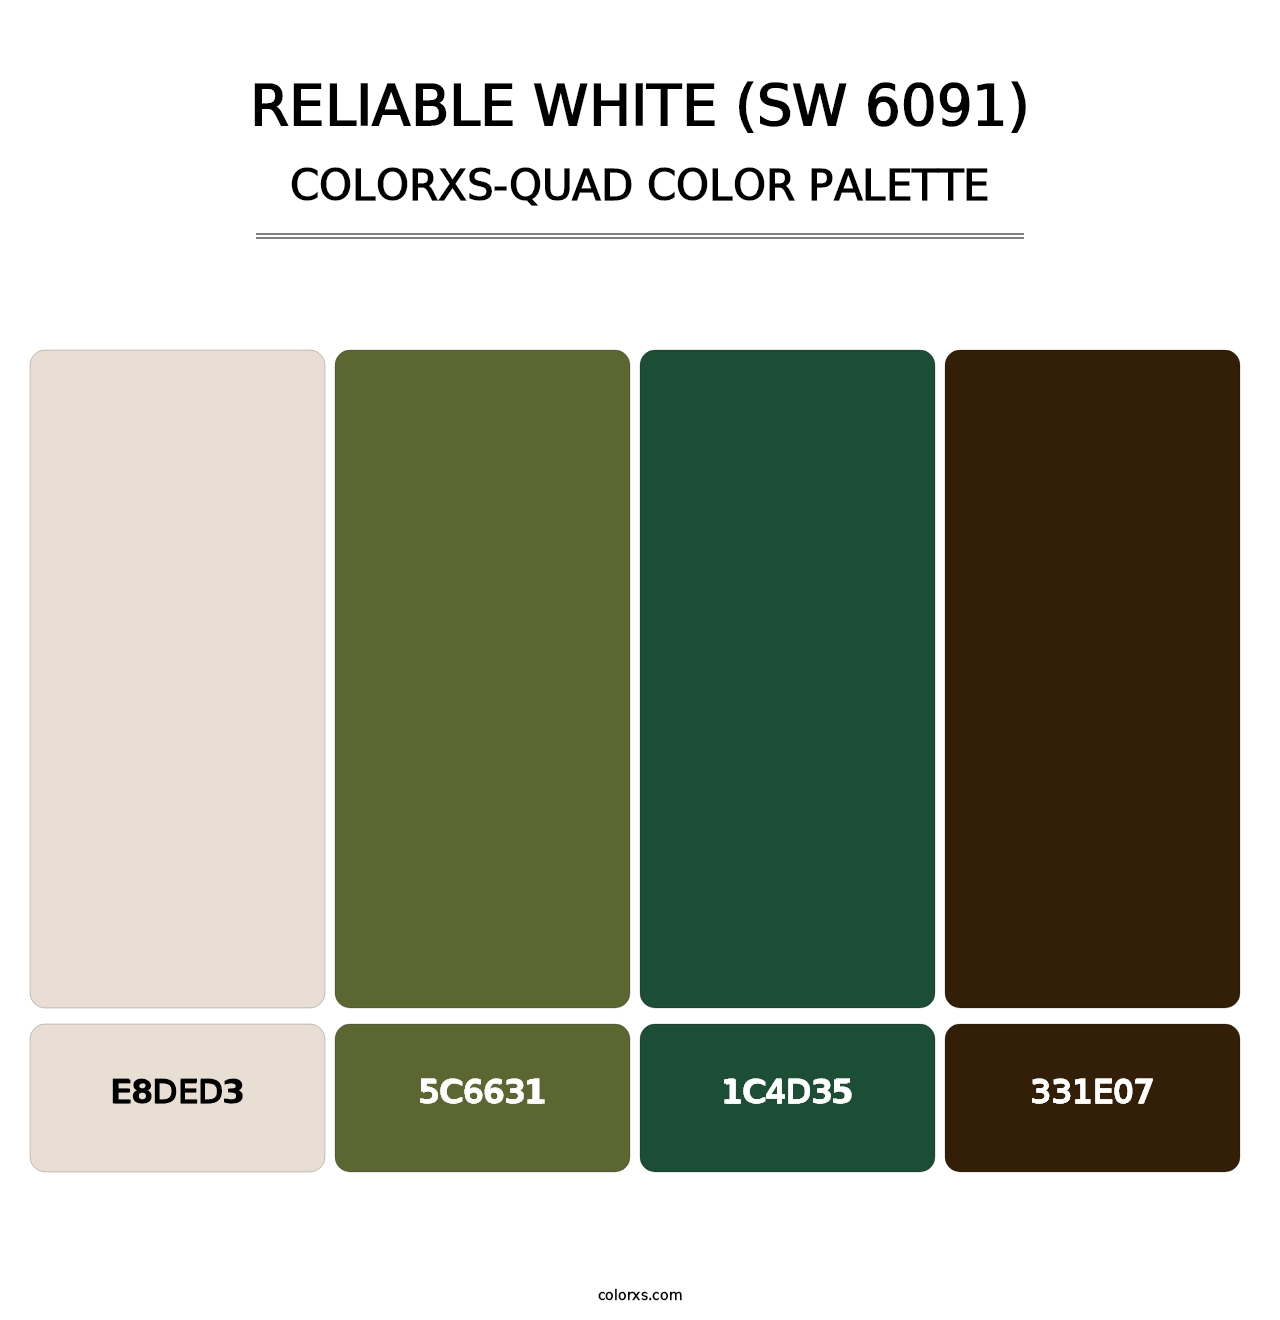 Reliable White (SW 6091) - Colorxs Quad Palette